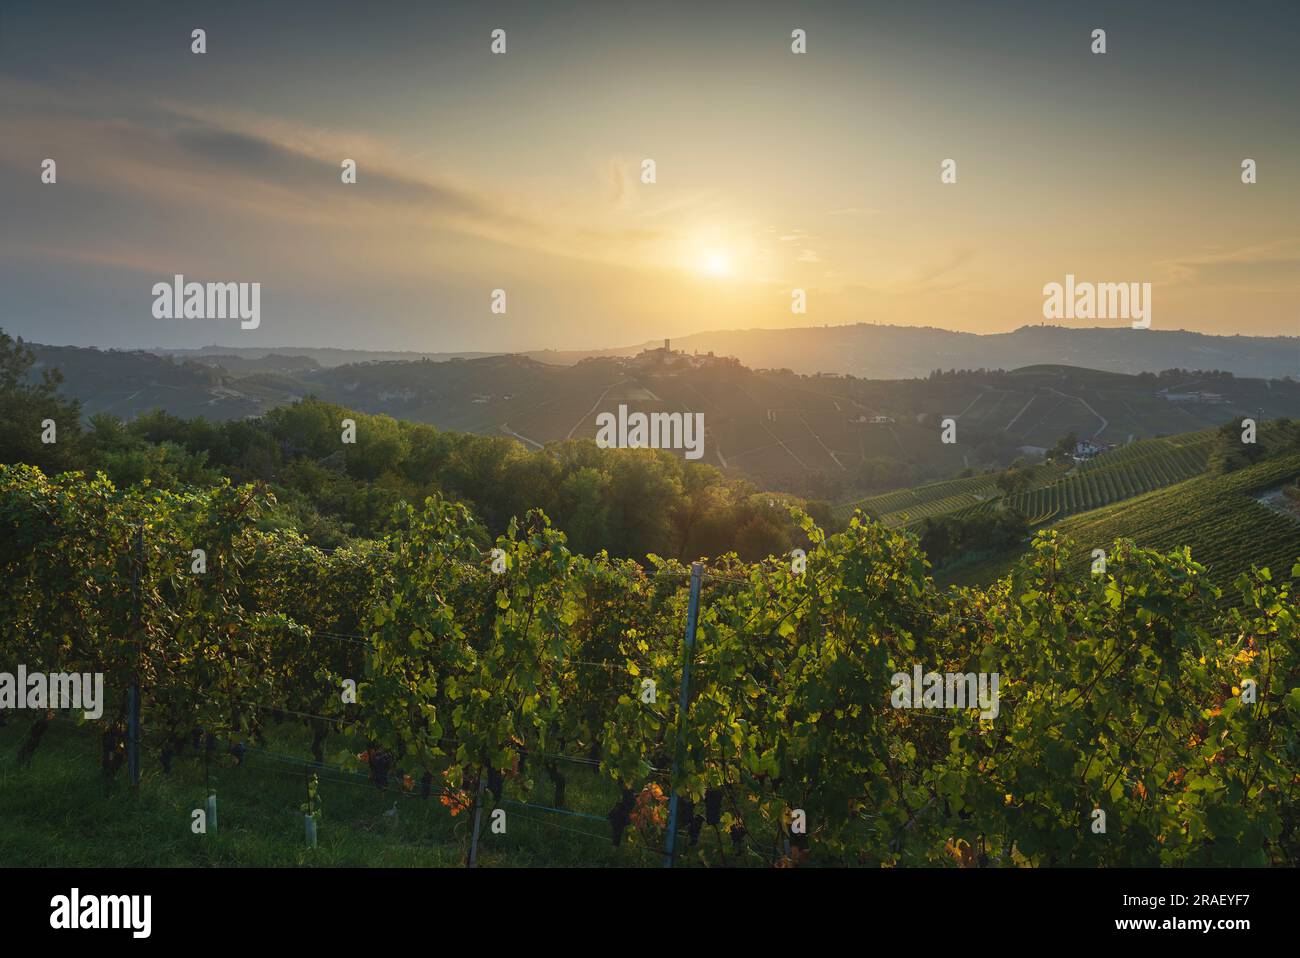 Vignobles de Langhe et village de Castiglione Falletto au sommet de la colline en arrière-plan, site classé au patrimoine mondial de l'UNESCO, région du Piémont, Italie, Euro Banque D'Images